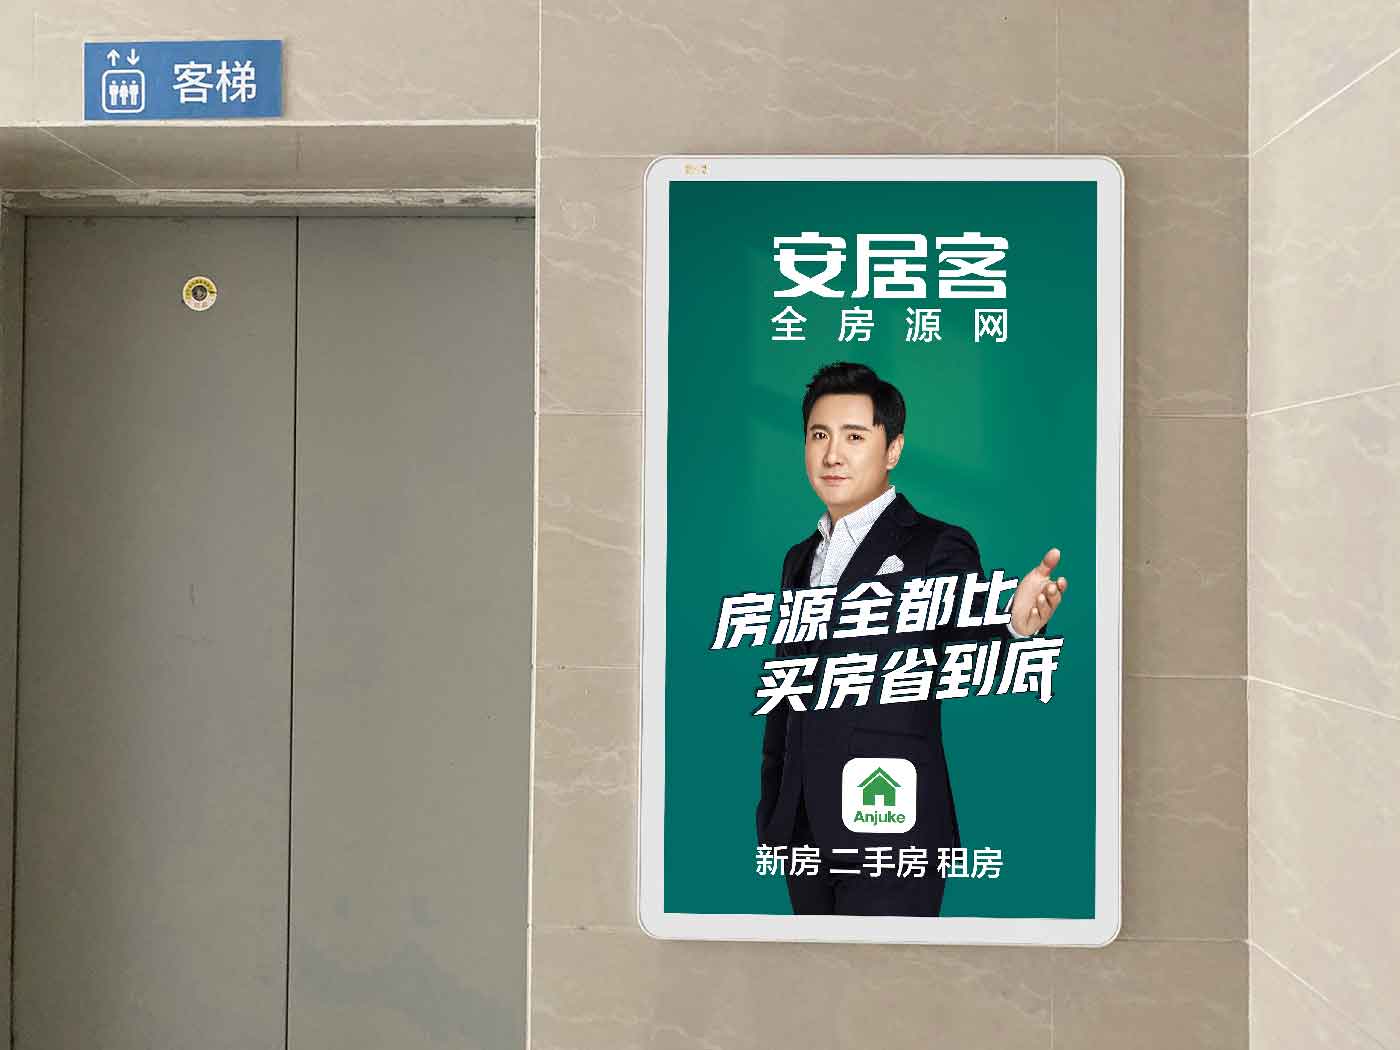 上海电梯广告费用一般多钱一月 电梯广告投放公司投放